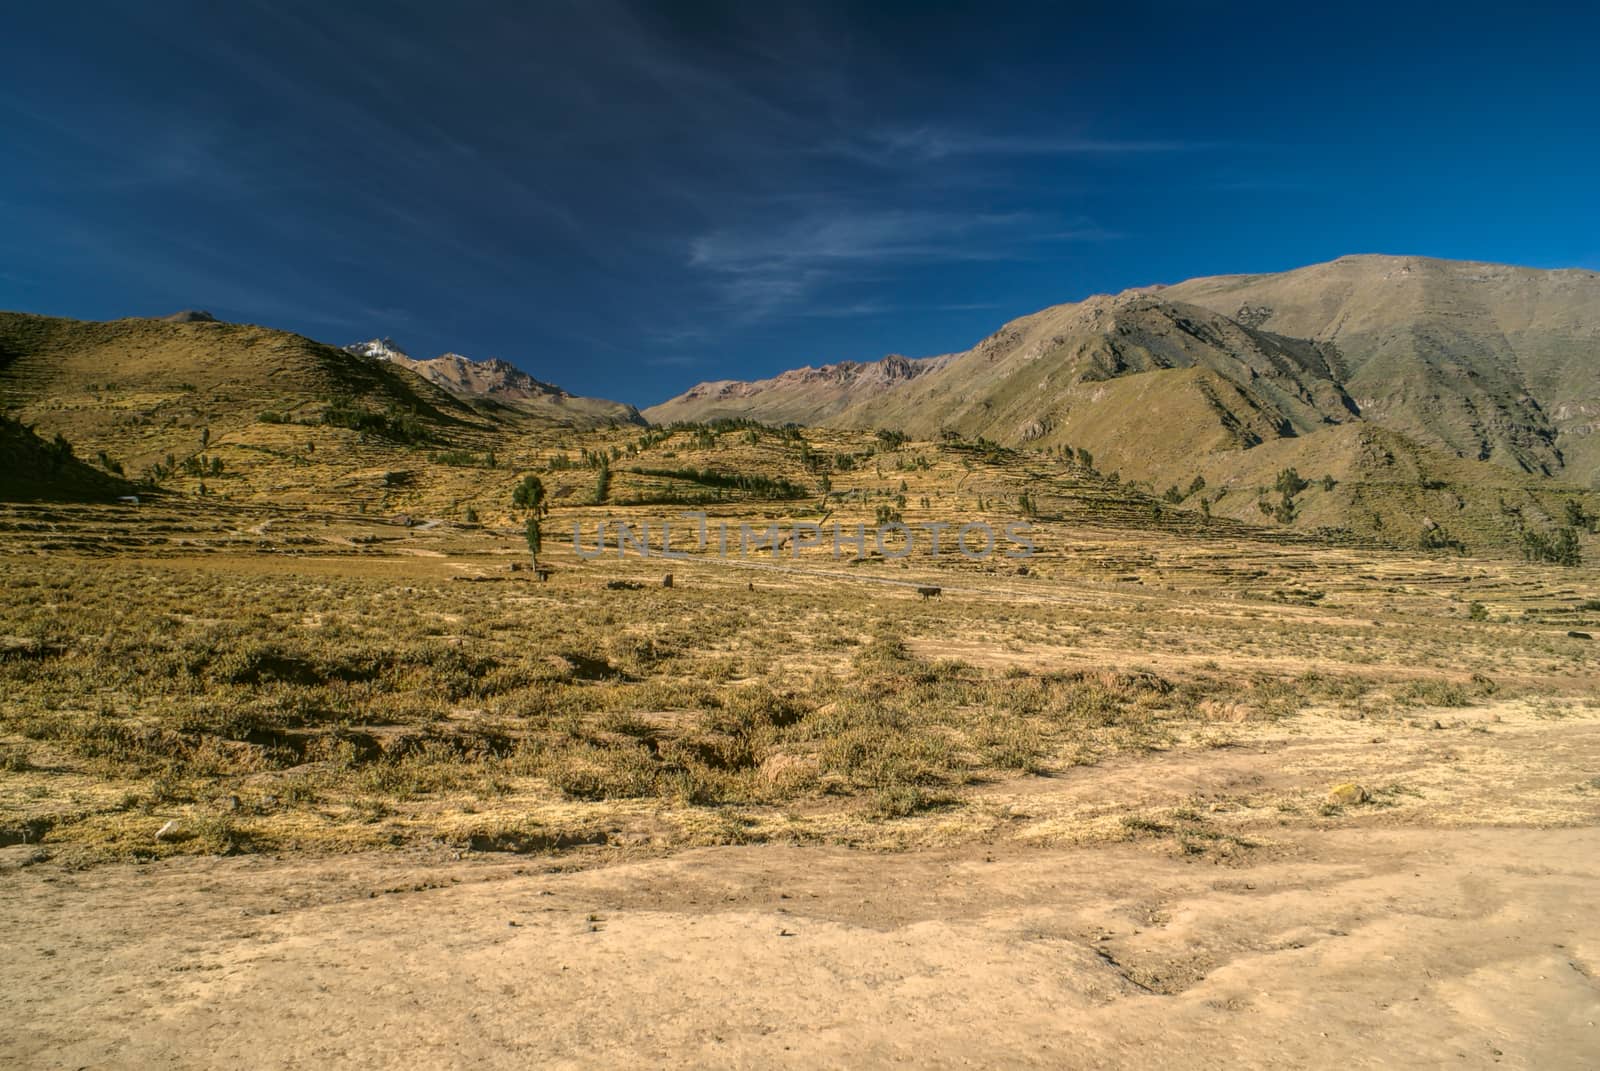 Arid peruvian landscape near Canon del Colca